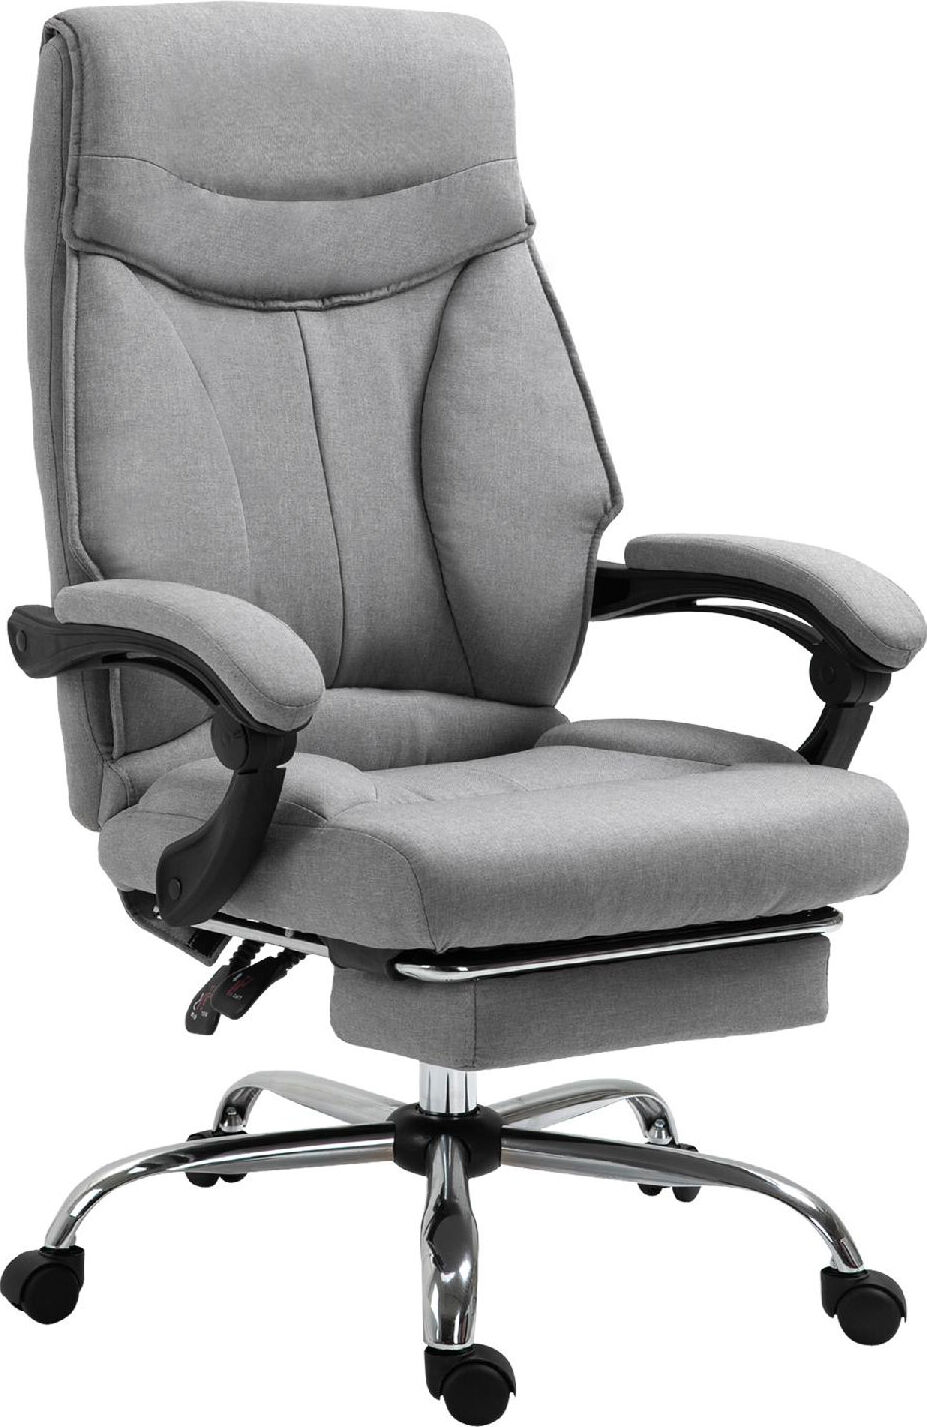 icon space 437ek921 sedia ergonomica ufficio sedia da scrivania poltrona direzionale con rotelle e braccioli reclinabile, girevole e regolabile in altezza con poggiapiedi colore grigio - 437ek921